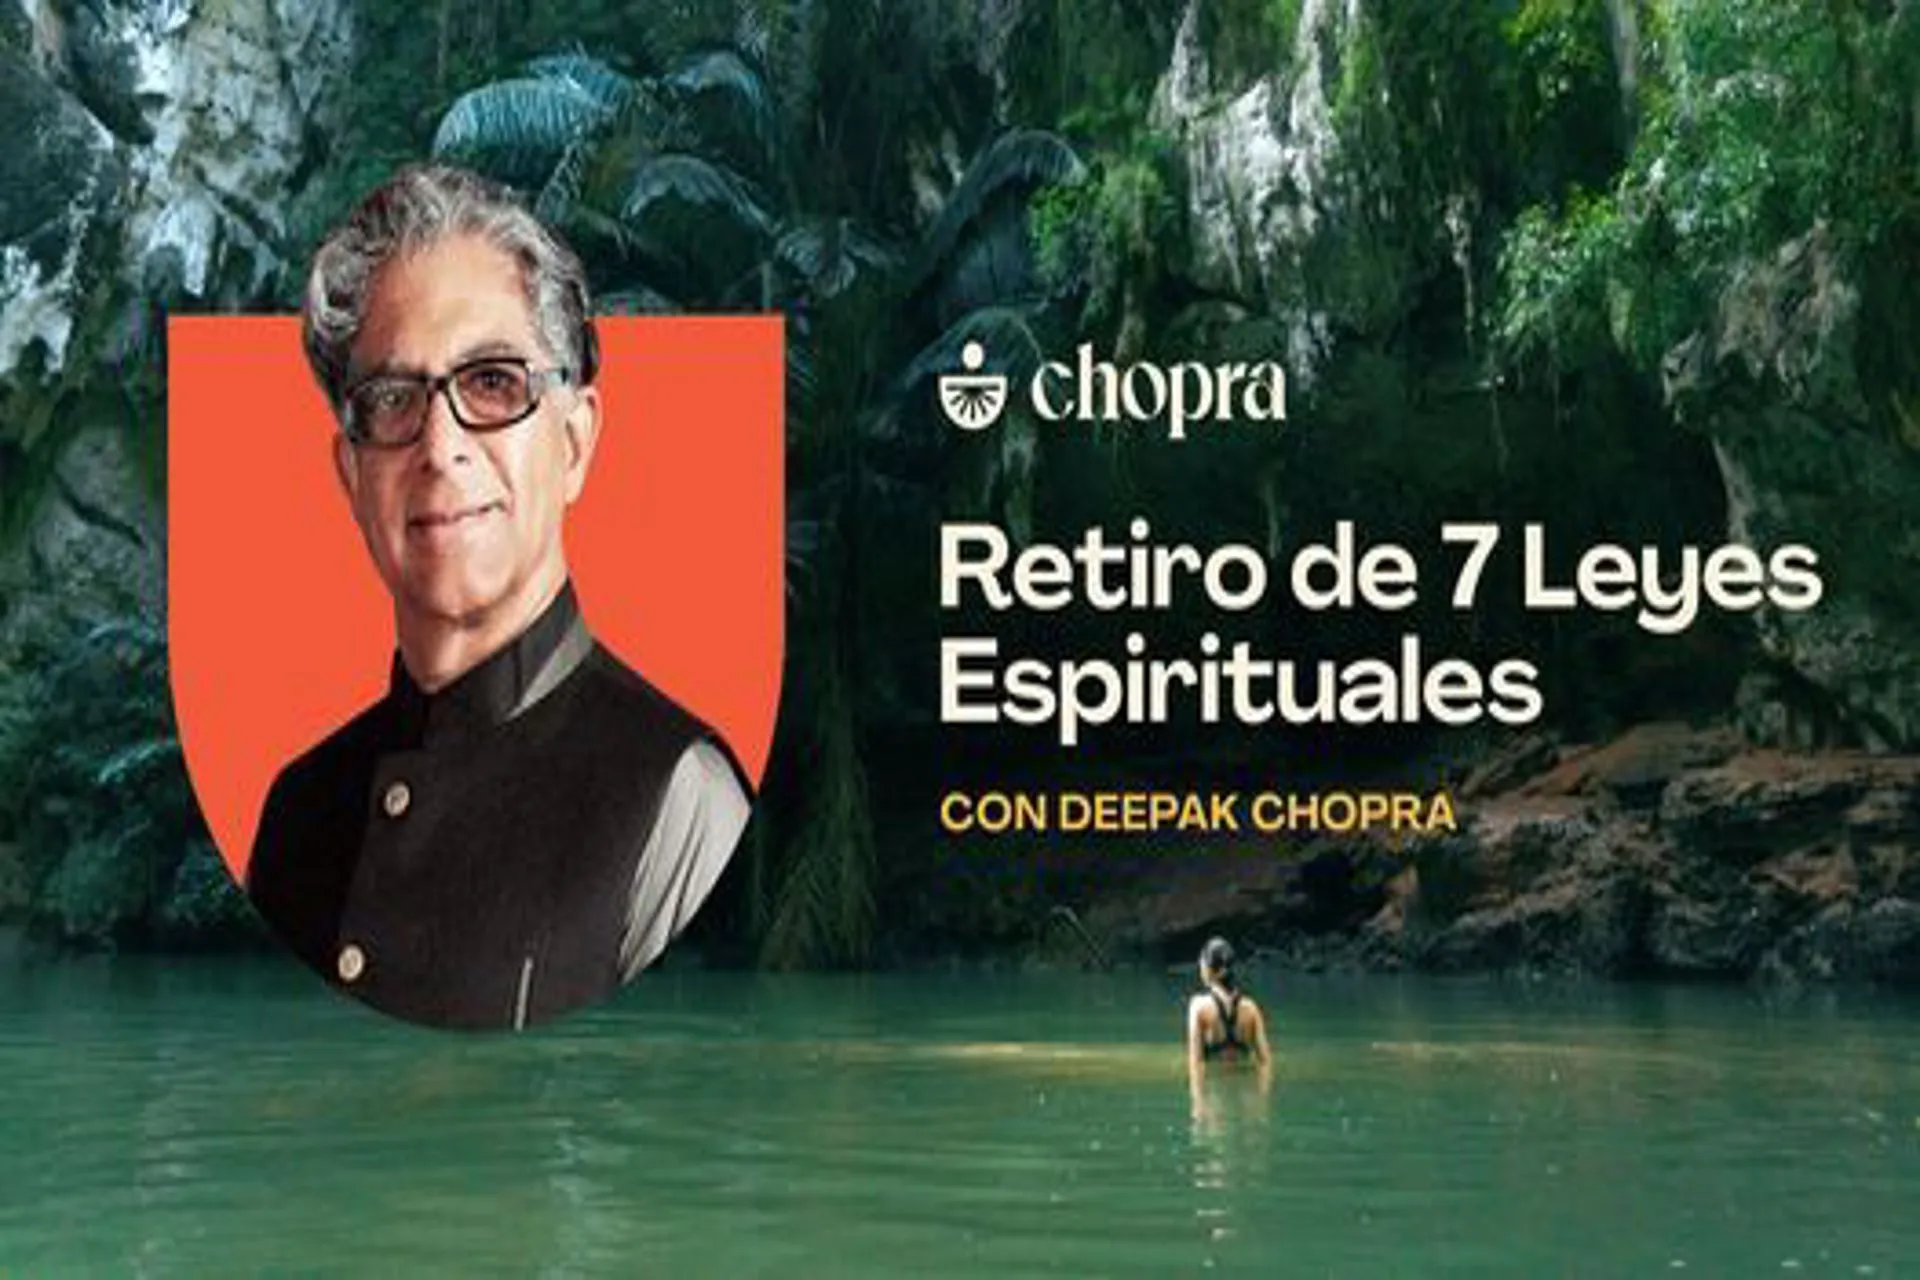 Deepak Chopra llegará al Fairmont Mayakoba para un retiro espiritual